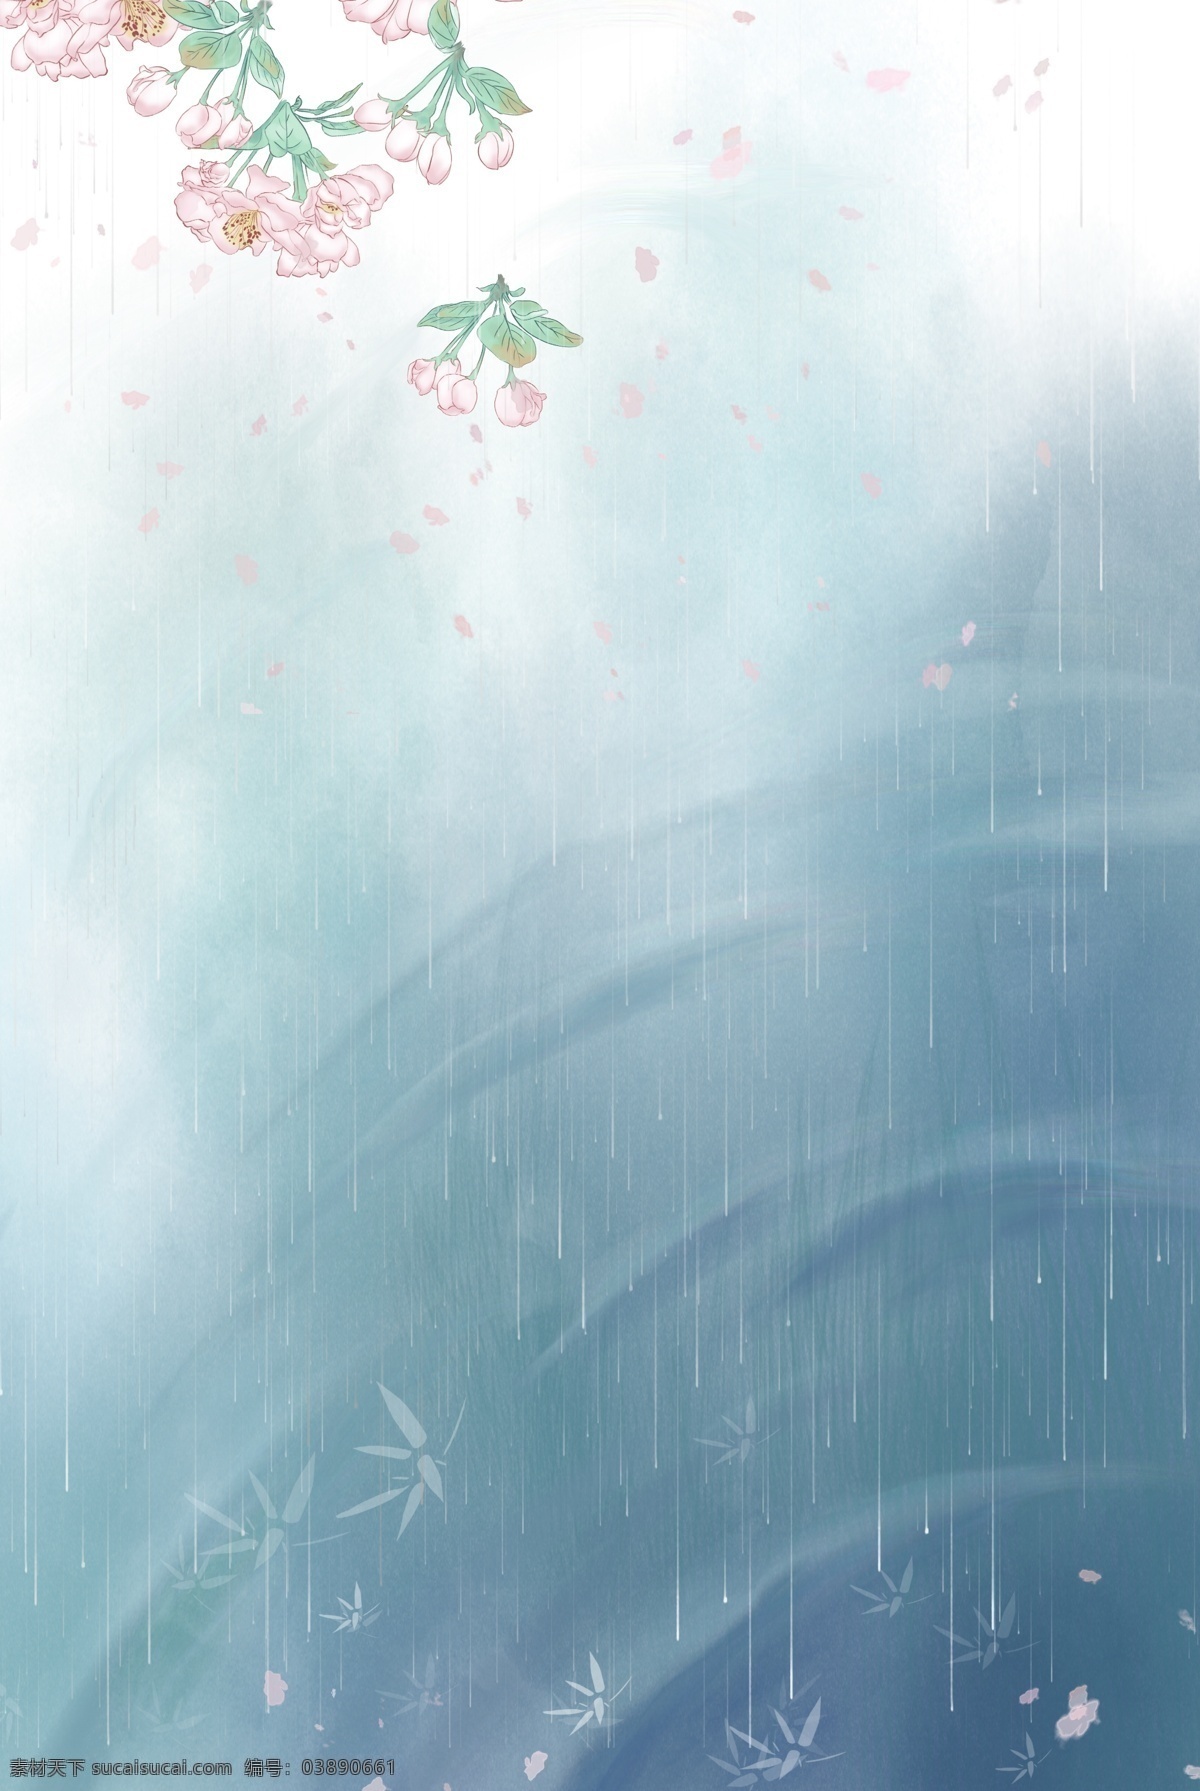 雨水 二十四节气 分层 banner 雨水节气 传统节气 花瓣 手绘 插画 春天 创意合成